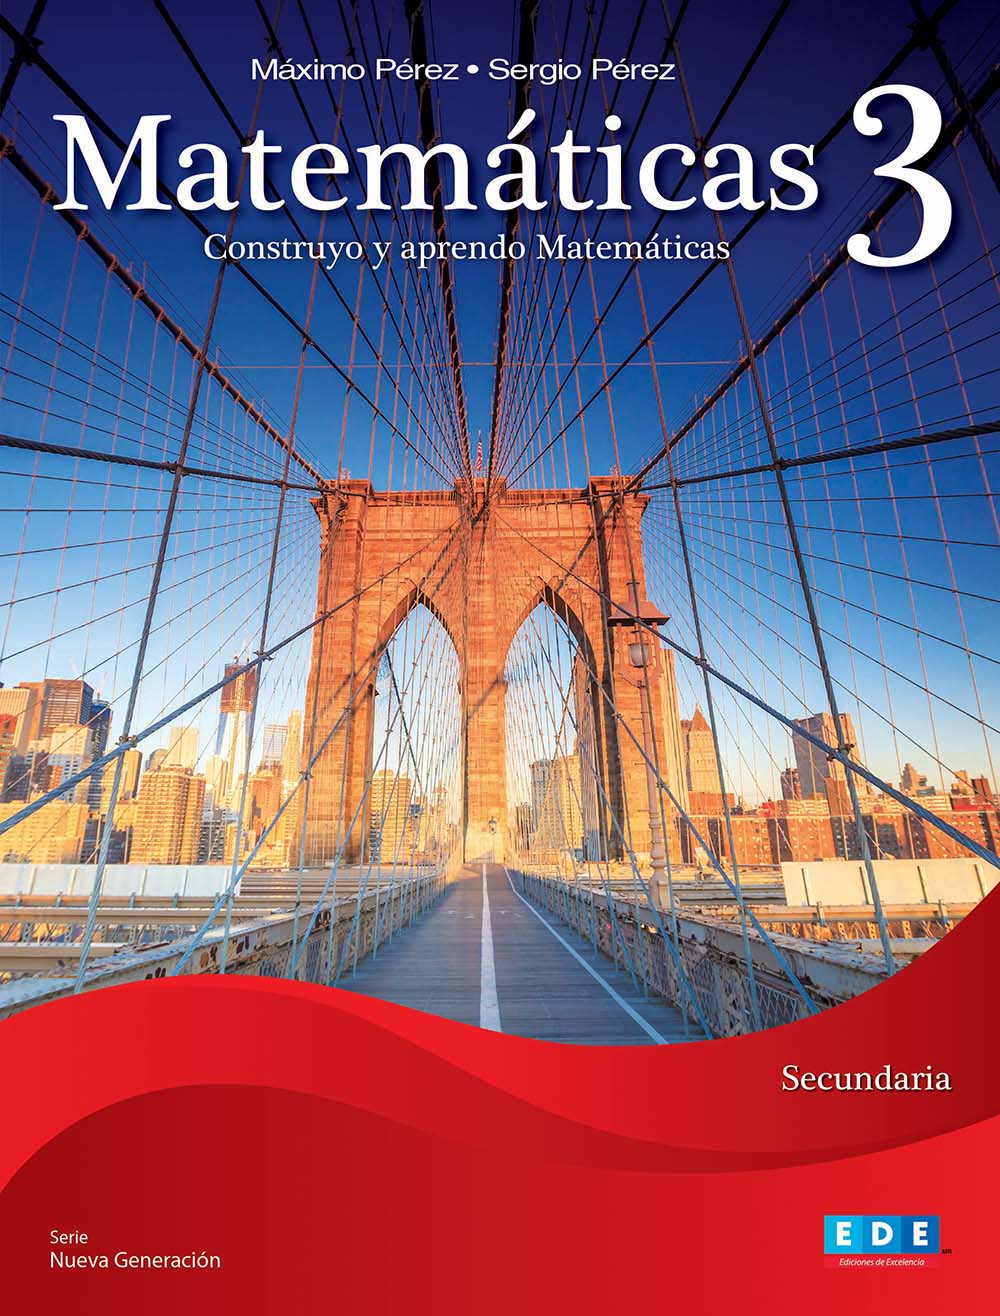 Matemáticas 3 Construyo y aprendo Matemáticas, Editorial: Ediciones de Excelencia, Nivel: Secundaria, Grado: 3